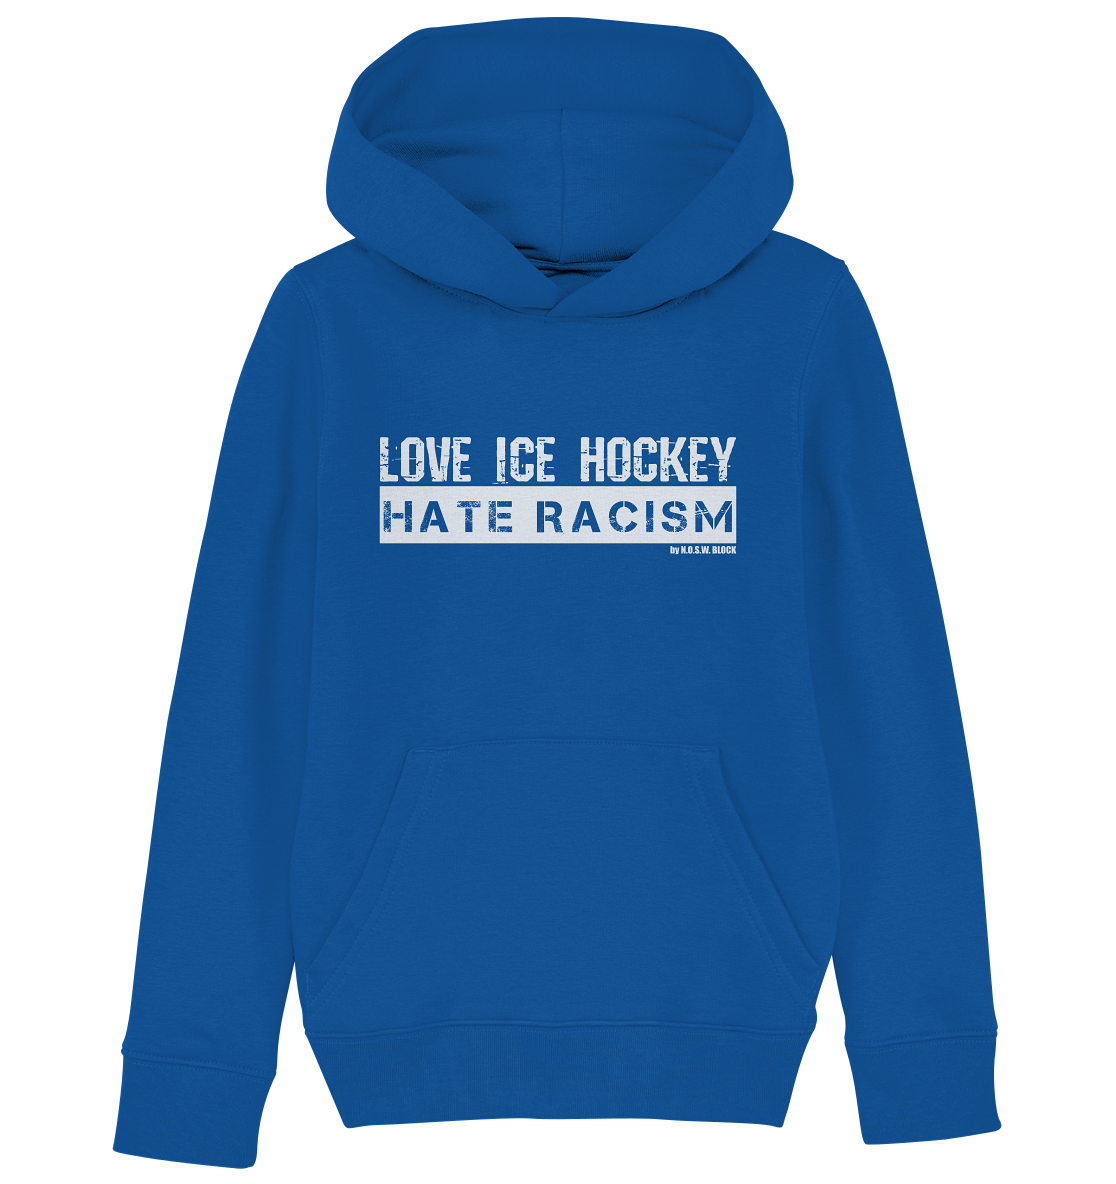 N.O.S.W. BLOCK Gegen Rechts Hoodie "LOVE ICE HOCKEY HATE RACISM" Kids UNISEX Organic Kapuzenpullover blau